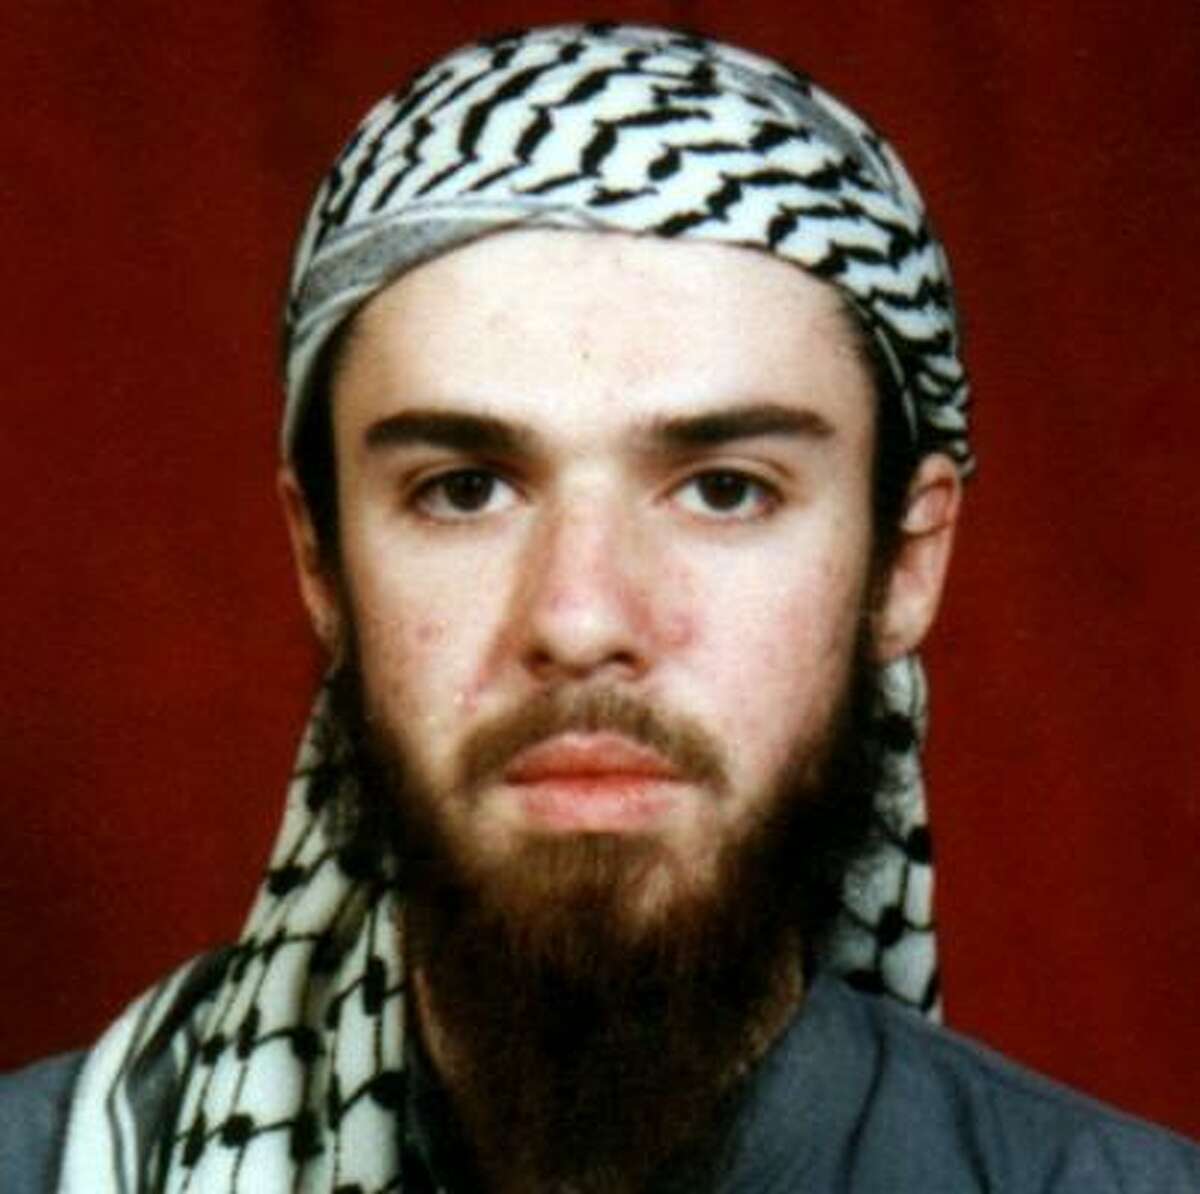 American John Walker Lindh was captured in November 2001 by U.S. forces in Afghanistan.